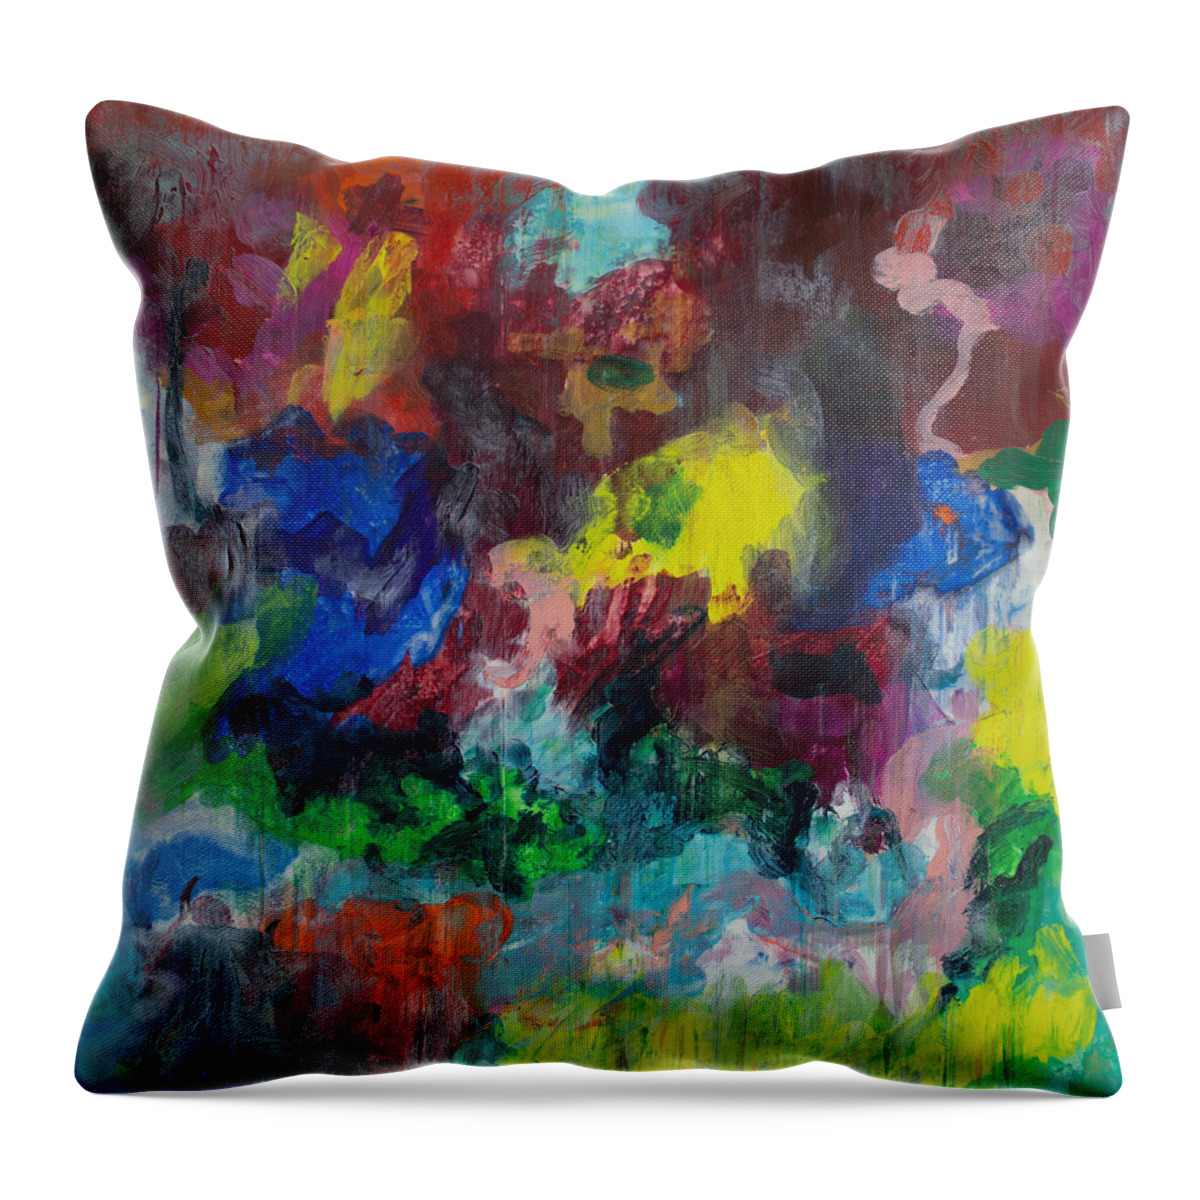 Derek Kaplan Art Throw Pillow featuring the painting Opt.68.15 Dreaming With Music by Derek Kaplan